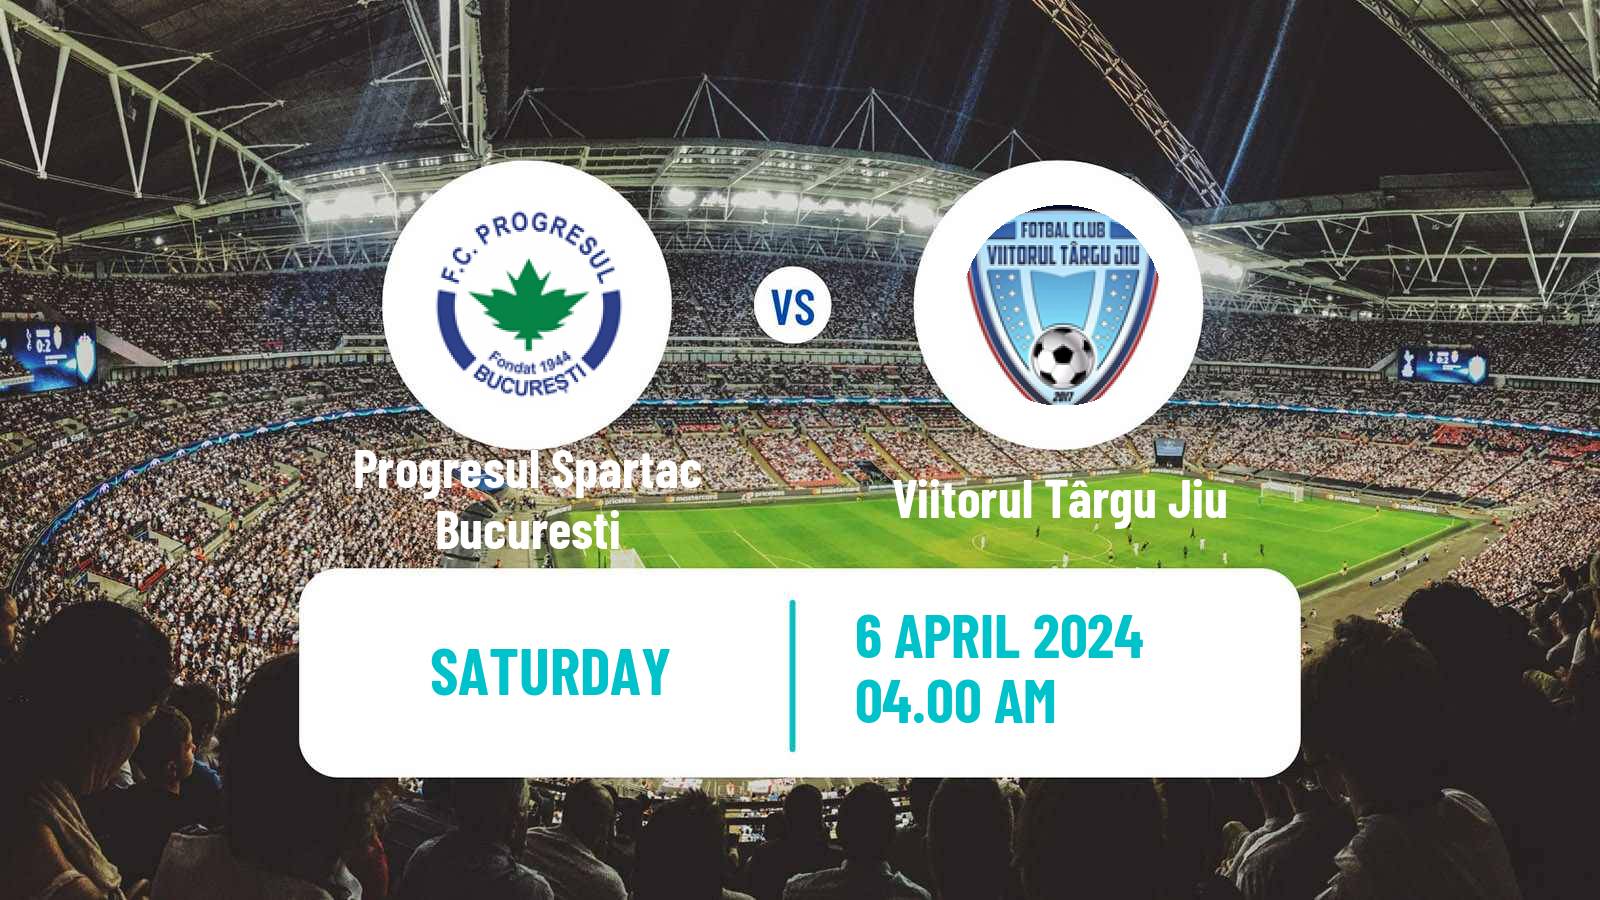 Soccer Romanian Division 2 Progresul Spartac Bucuresti - Viitorul Târgu Jiu